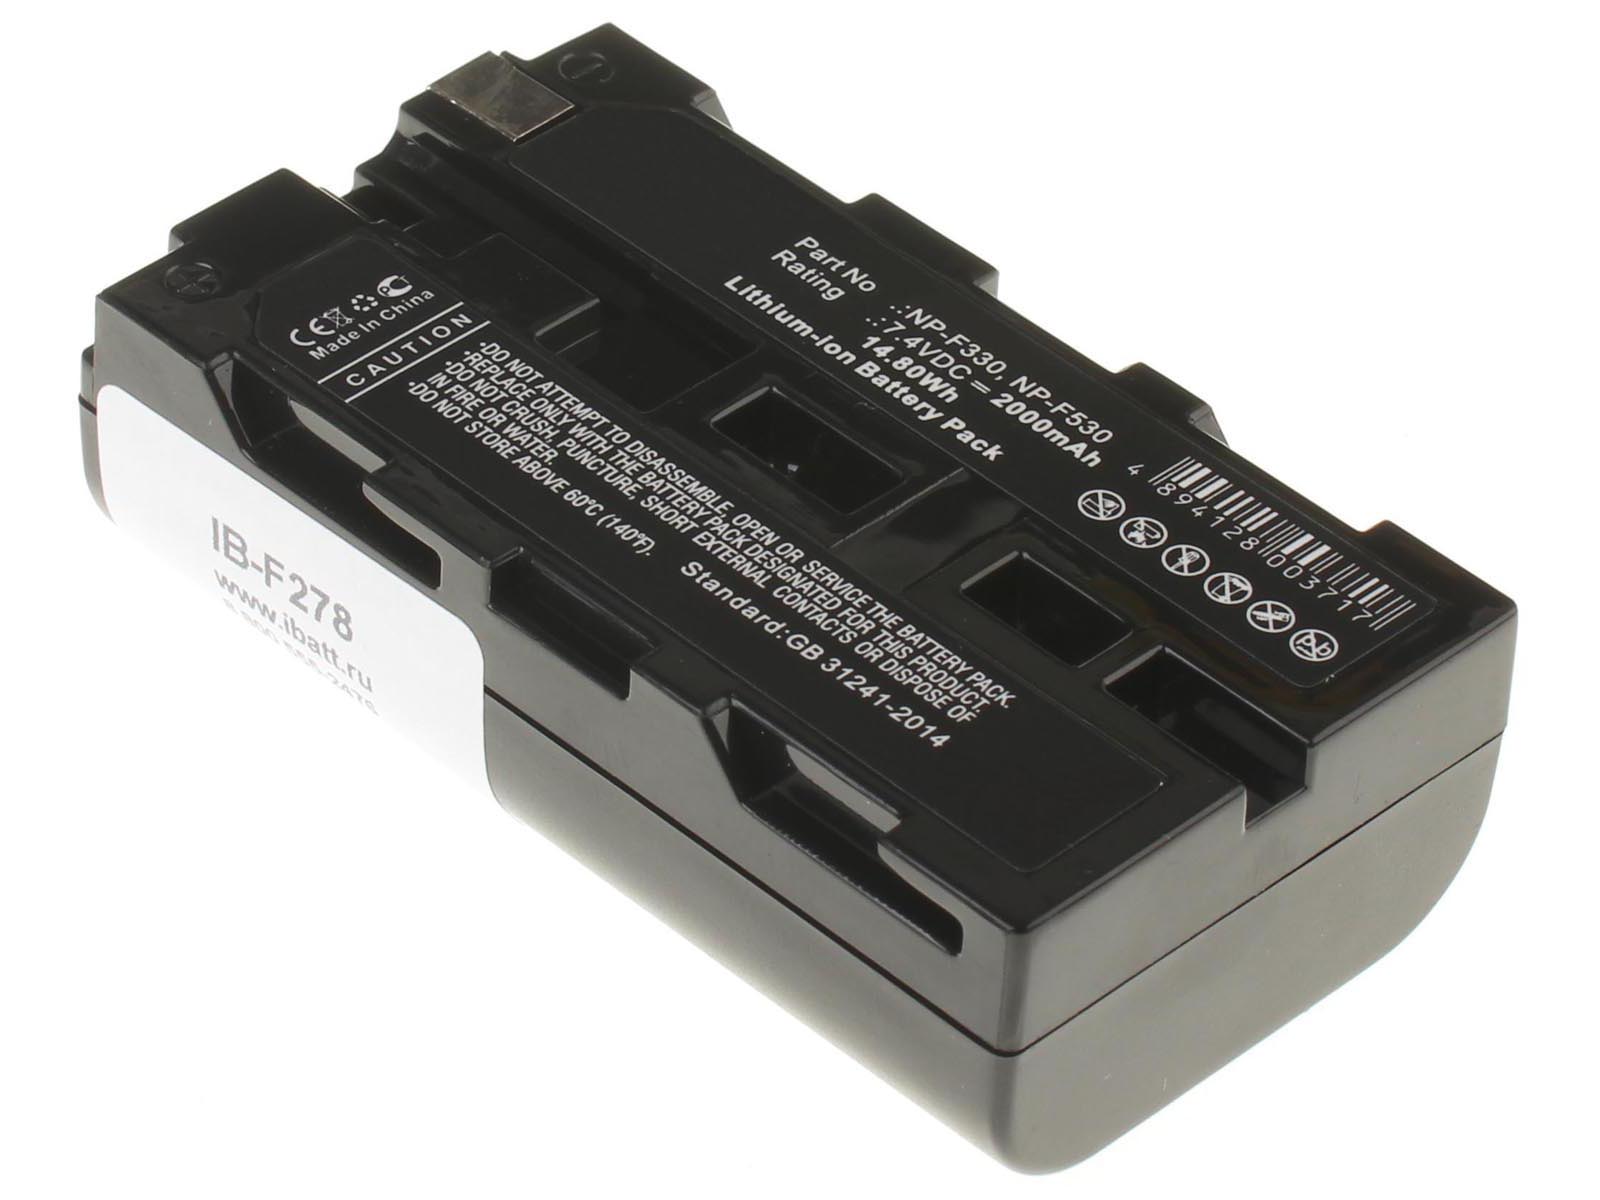 Аккумуляторная батарея iBatt iB-F278 для фотокамер и видеокамер HitachiЕмкость (mAh): 2000. Напряжение (V): 7,4